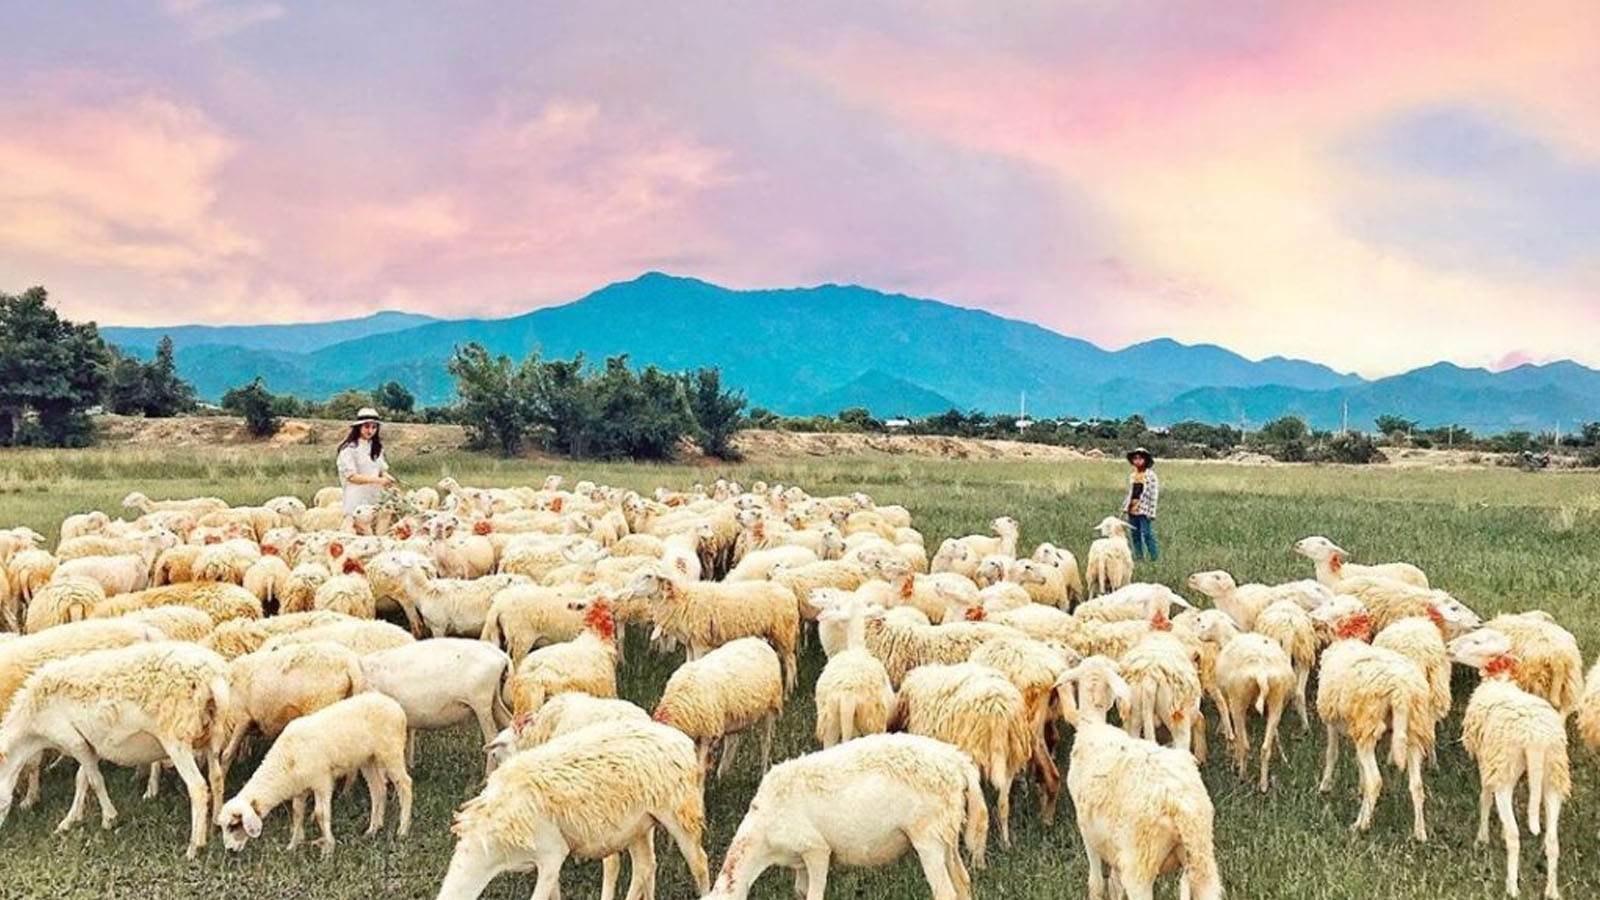 Đồng cừu An Hòa là một trong những đồng cừu nổi tiếng nhất của Ninh Thuận